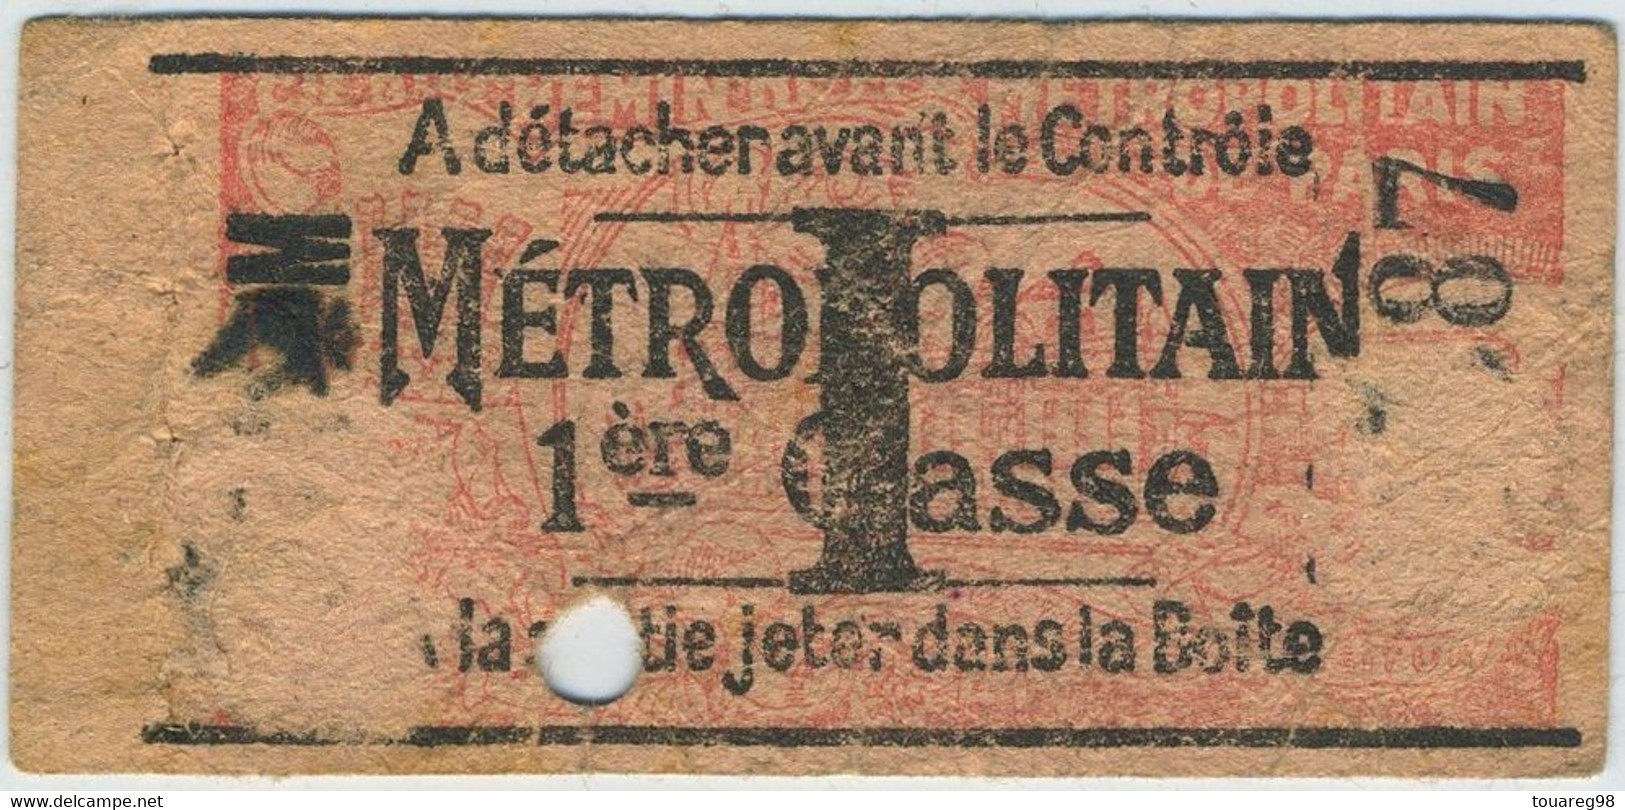 Paris. Métropolitain. Ticket De Métro I 1re Classe. - Europe